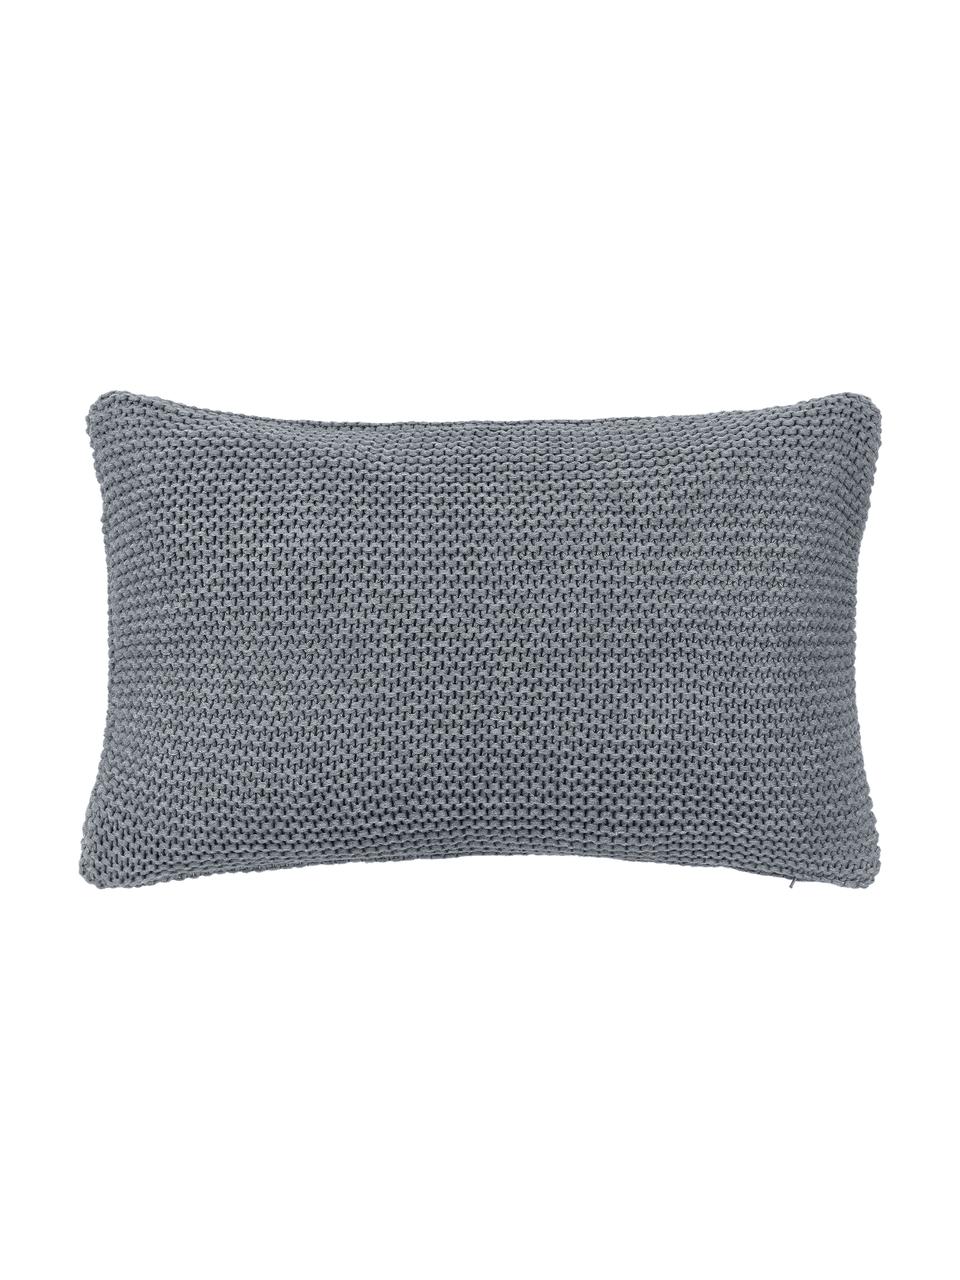 Housse de coussin tricot gris clair Adalyn, 100 % coton bio, certifié GOTS, Gris, larg. 30 x long. 50 cm